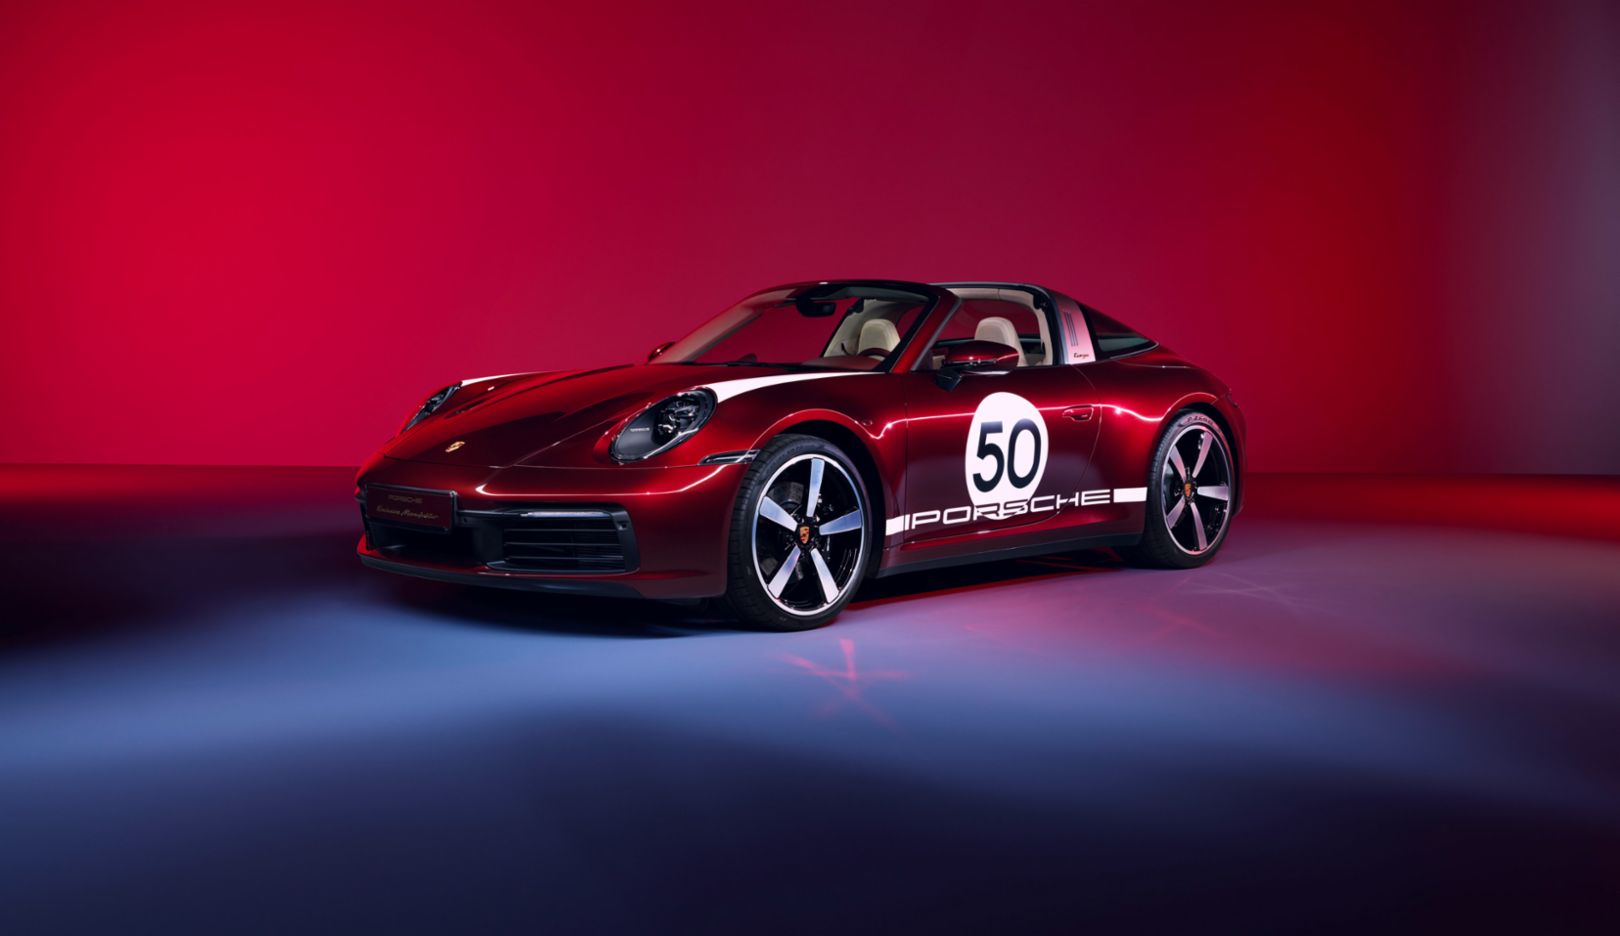 Estreno virtual: el nuevo Porsche 911 Targa 4S Heritage Design